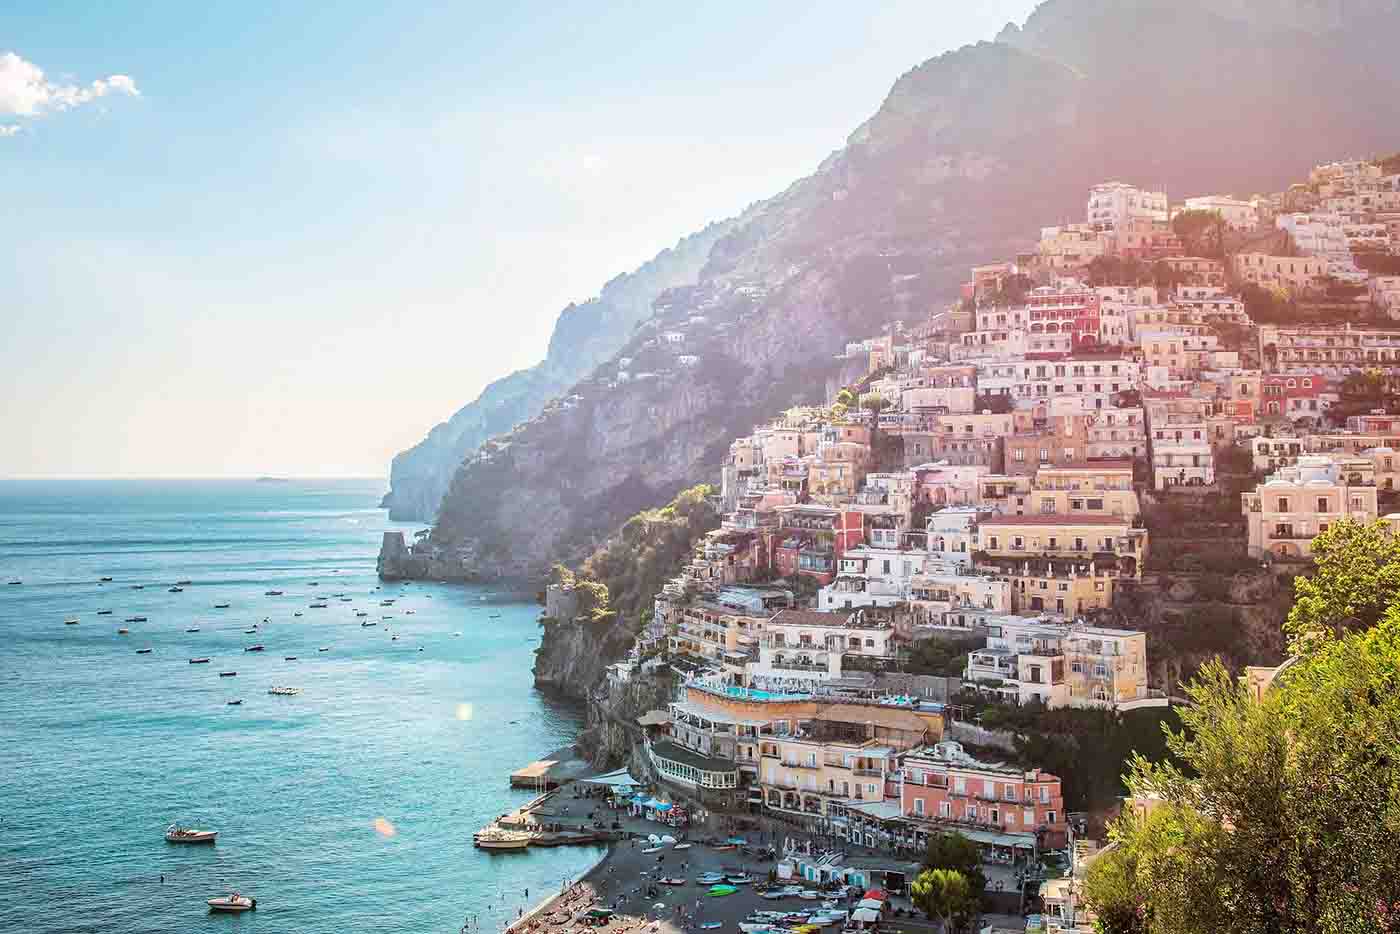 Image of Amalfi Coast